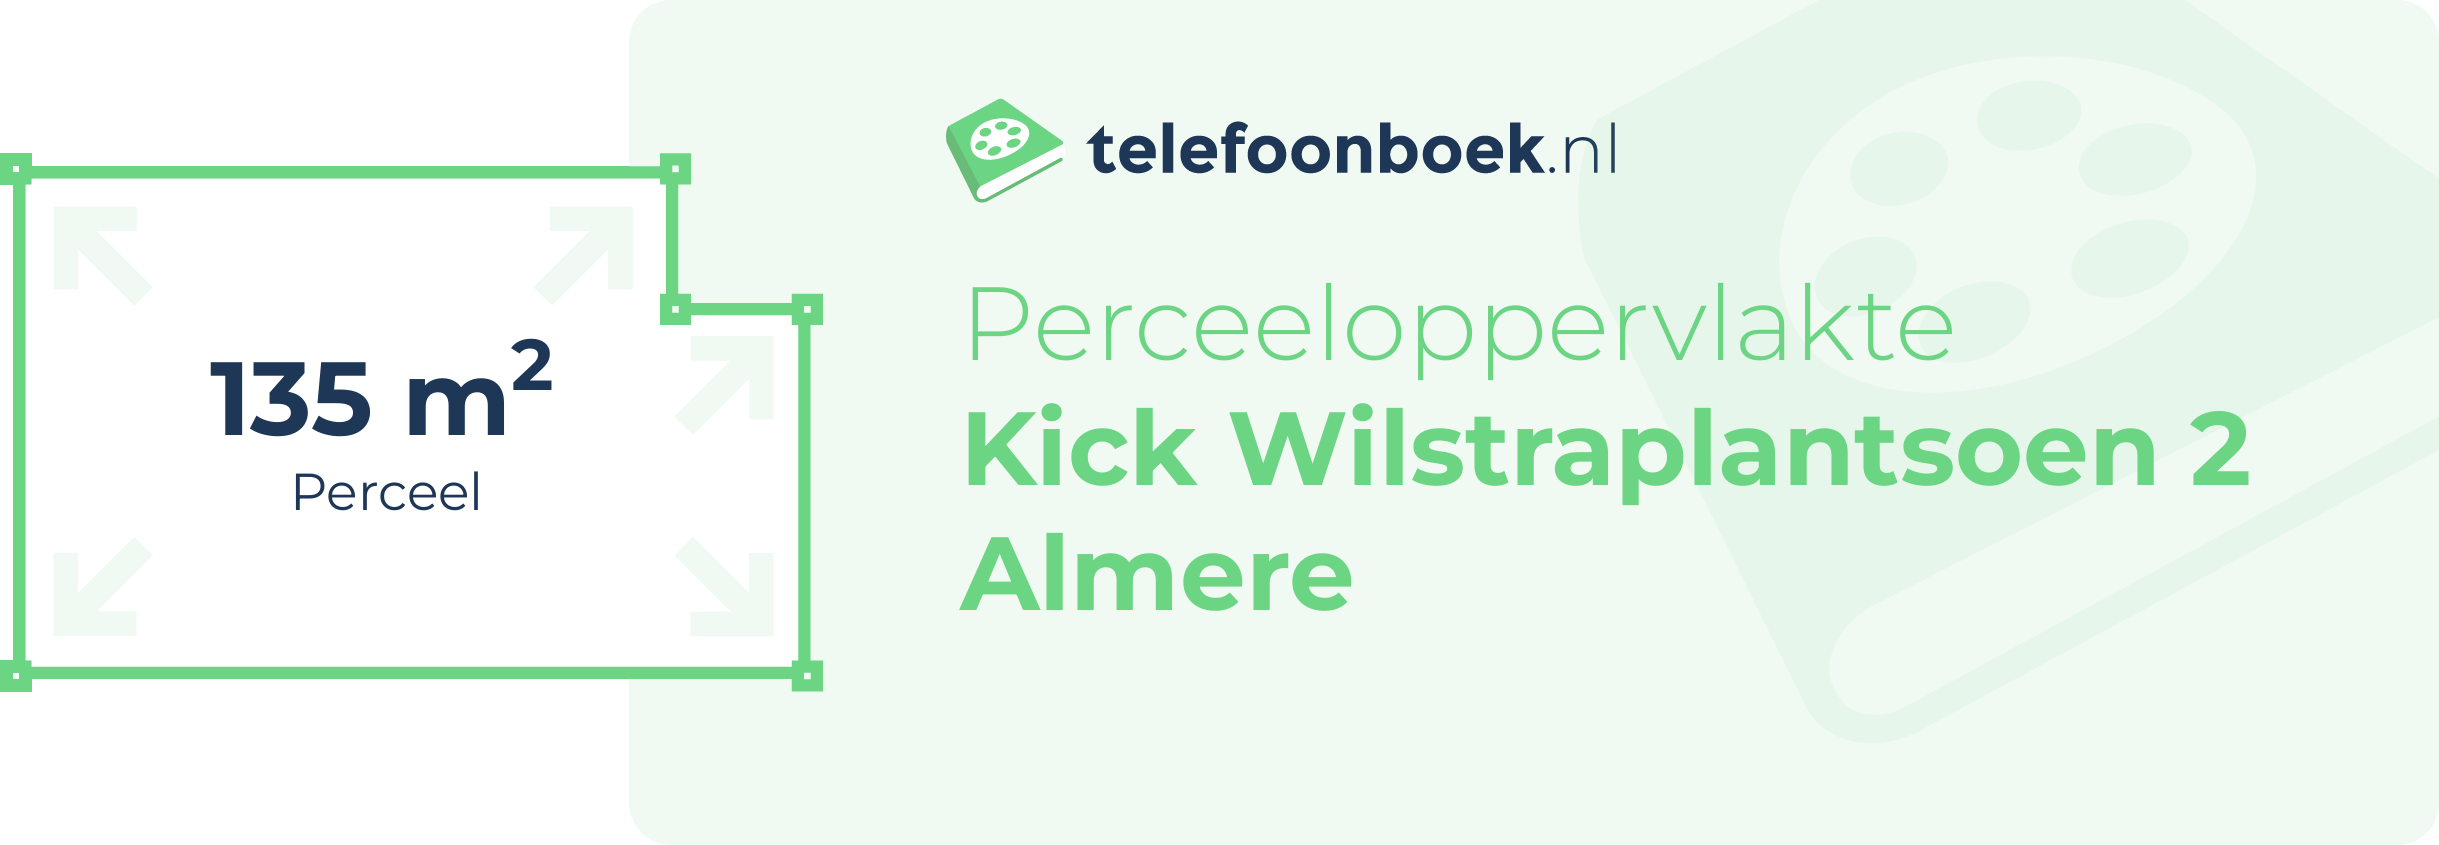 Perceeloppervlakte Kick Wilstraplantsoen 2 Almere